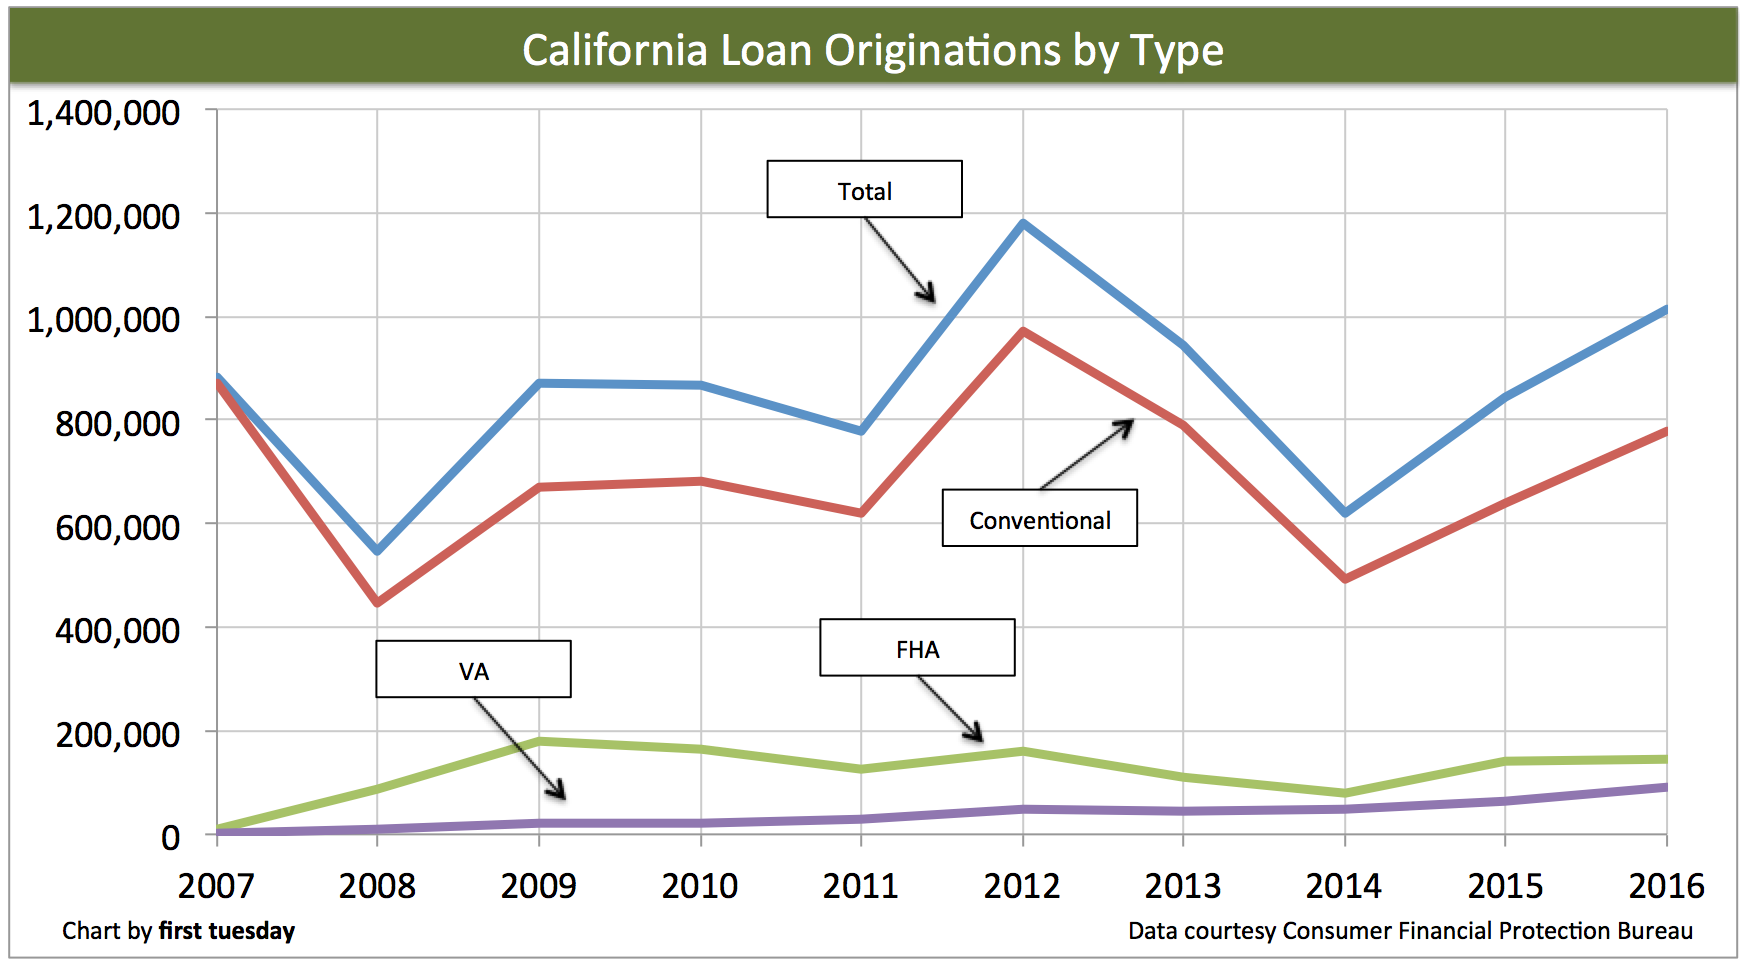 ca-loans-origination-type-2016